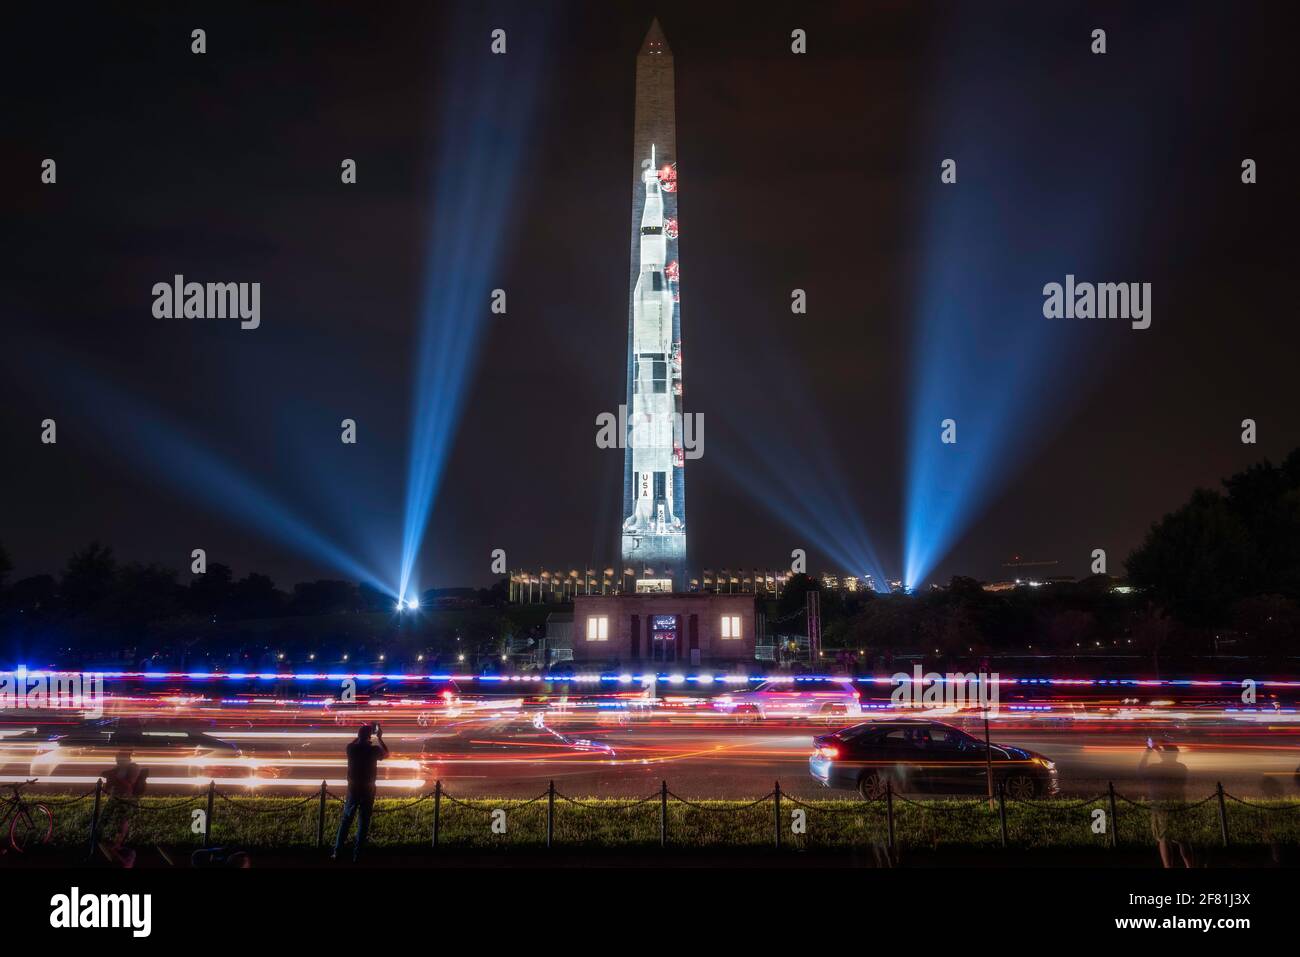 Vor dem Washington Monument rasten Polizeilichter über die 15th Street, während die „Go for the Moon“, die Saturn V Rakete, angezeigt wird. Stockfoto